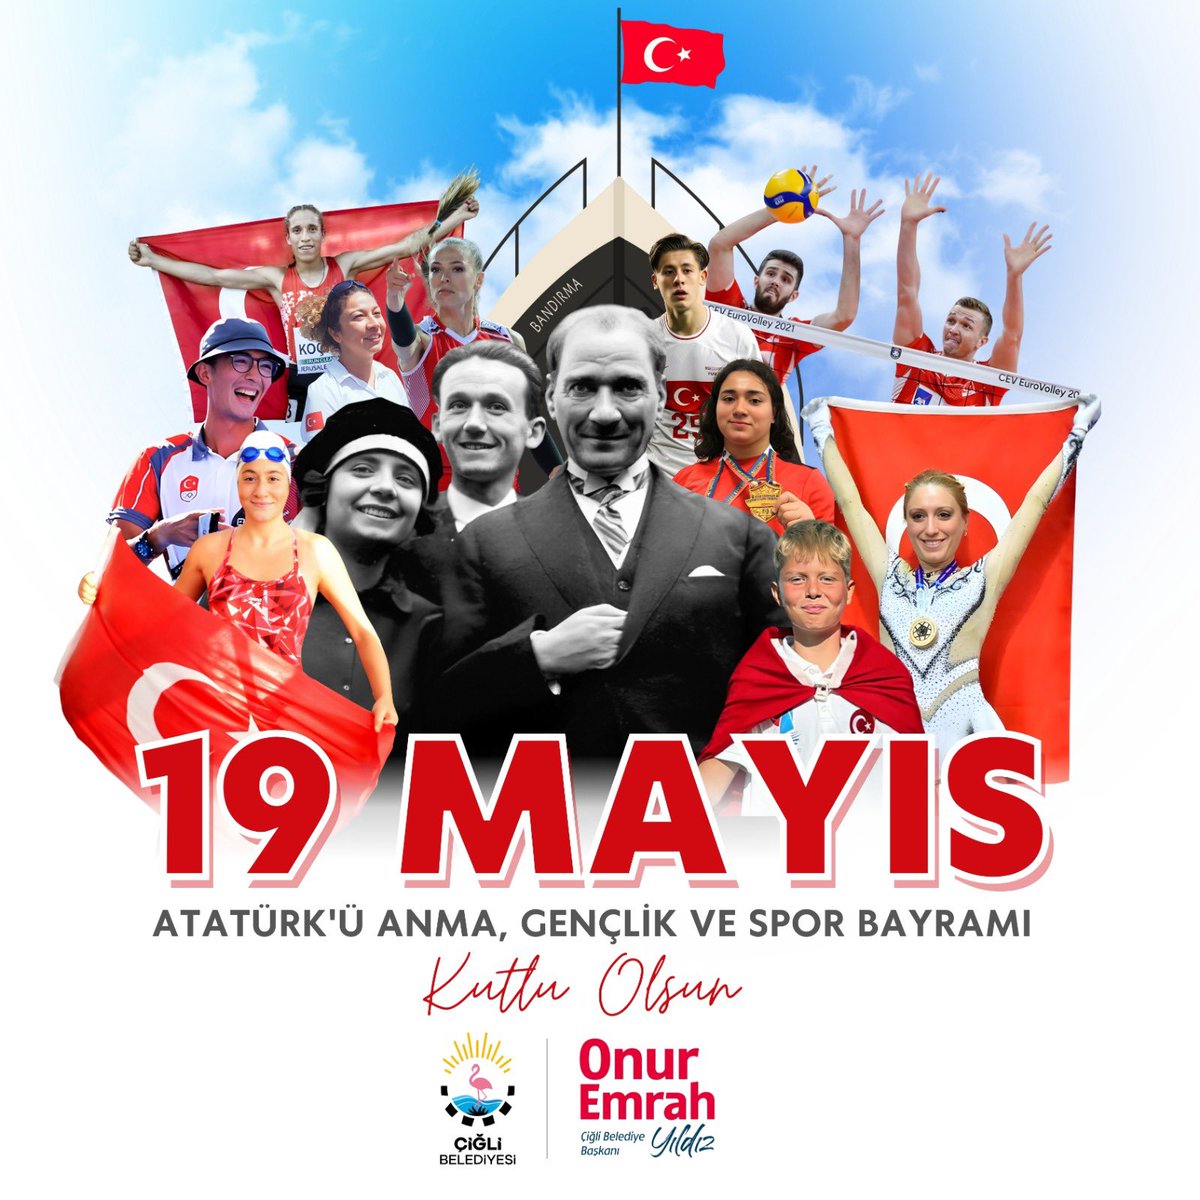 “19 Mayıs ulusal egemenliğin başlangıç günüdür” Başkomutanımız Gazi Mustafa Kemal Atatürk’ün Samsun’a çıkarak başlattığı Ulusal Bağımsızlık Mücadelemizin 105. yıl dönümünde 19 Mayıs Atatürk’ü Anma, Gençlik ve Spor Bayramımızı kutluyor; Ulu Önderimiz Mustafa Kemal Atatürk ve